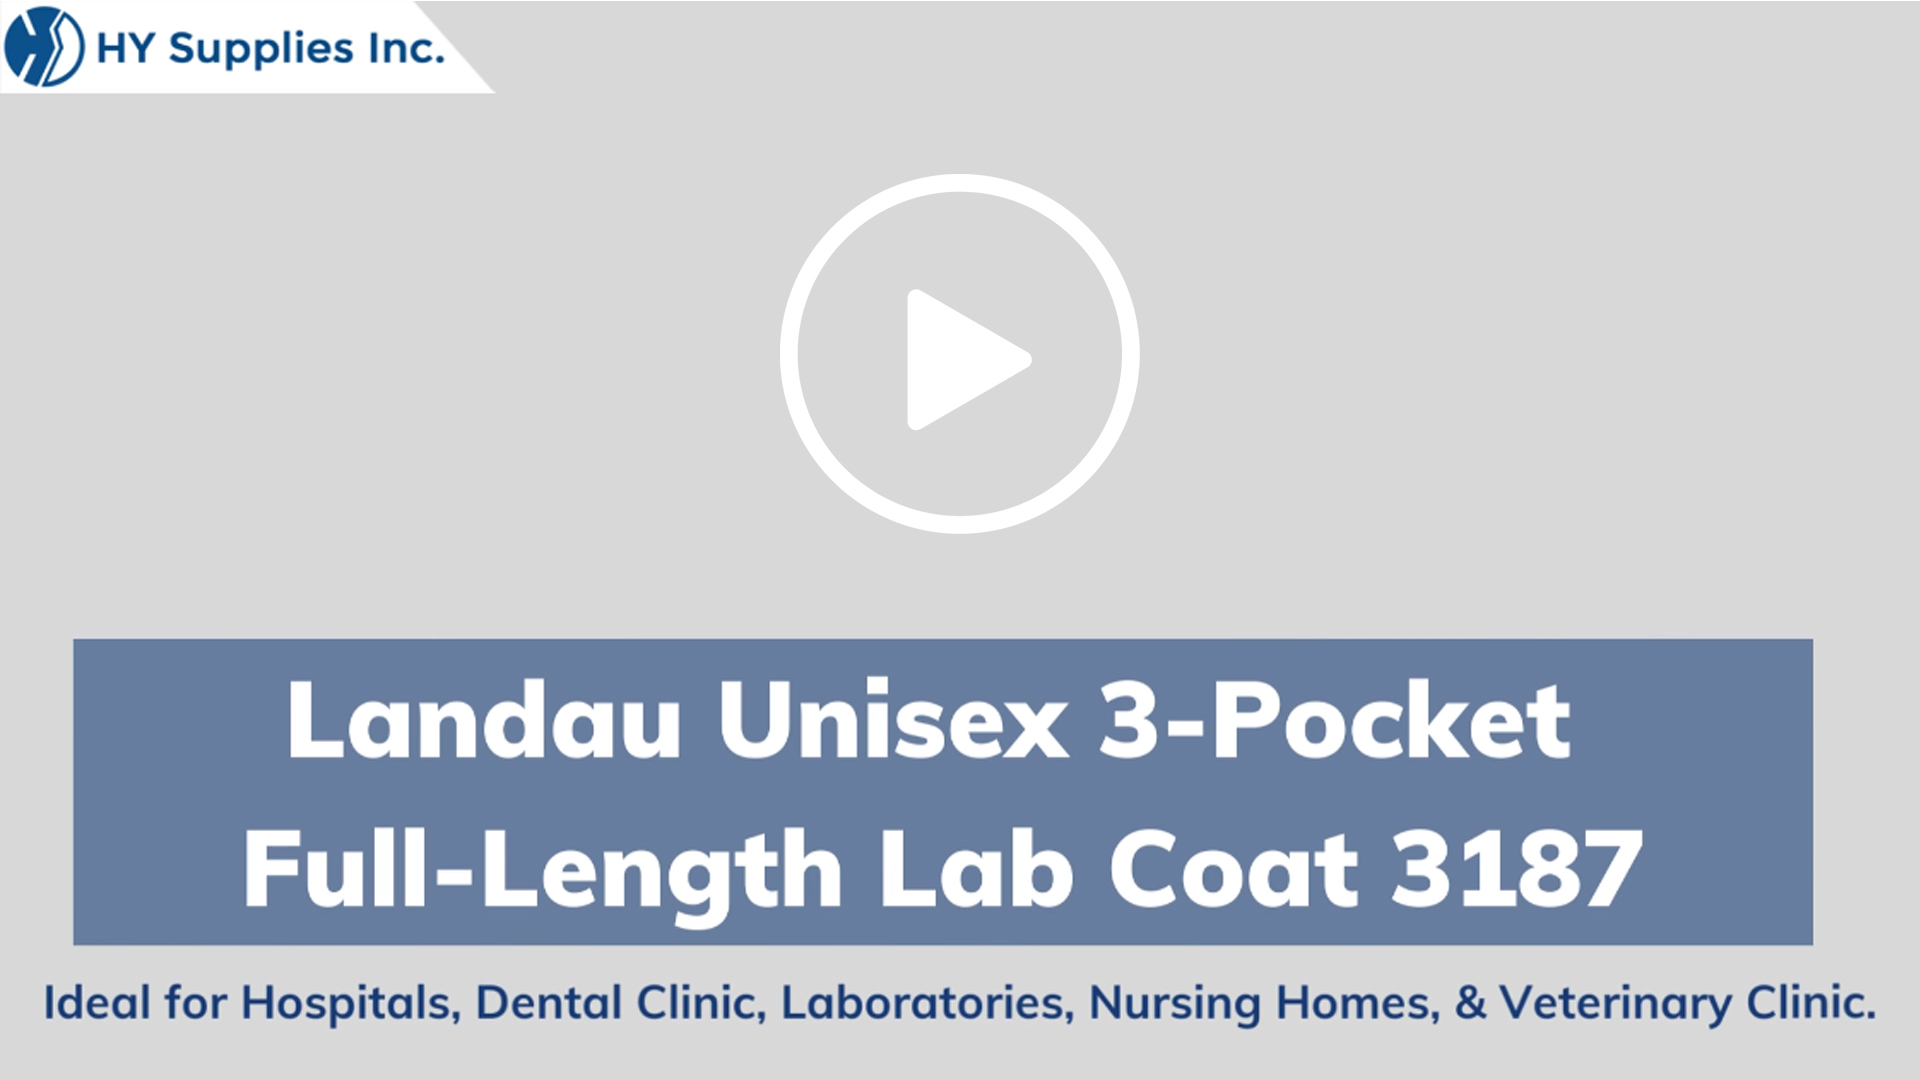 LANDAU UNISEX 3-POCKET FULL-LENGTH LAB COAT